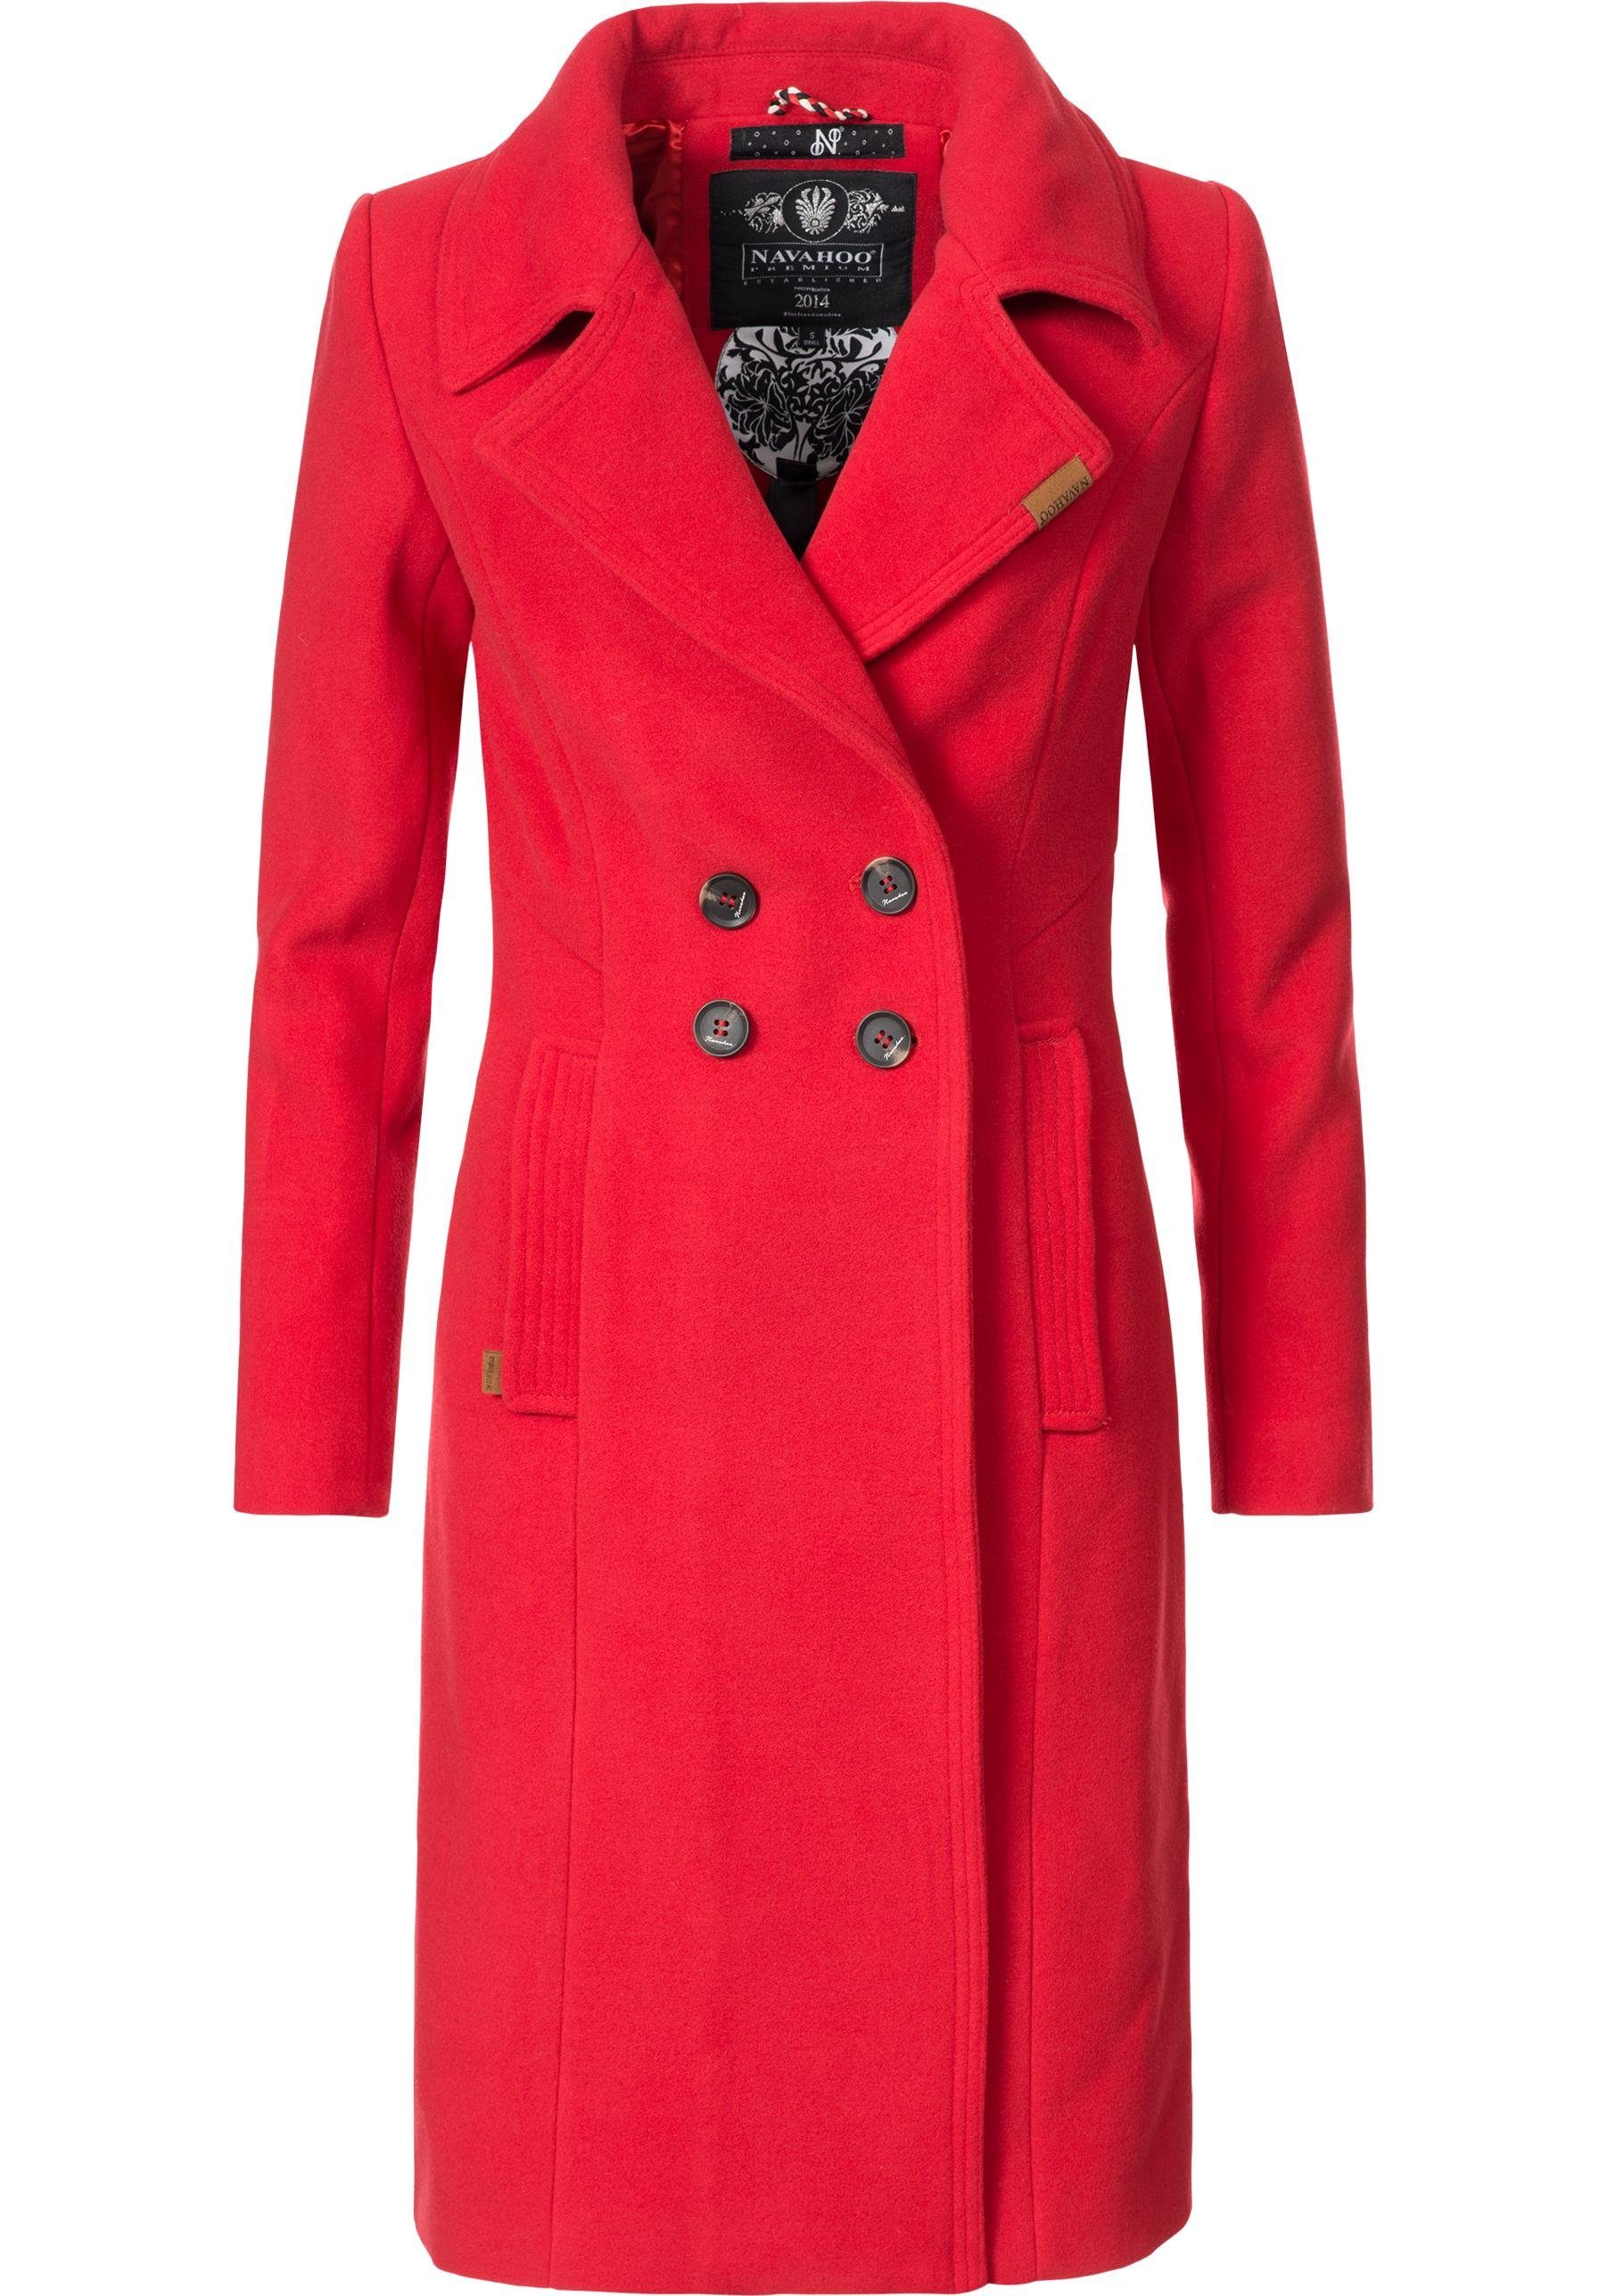 Roter Mantel online kaufen | OTTO